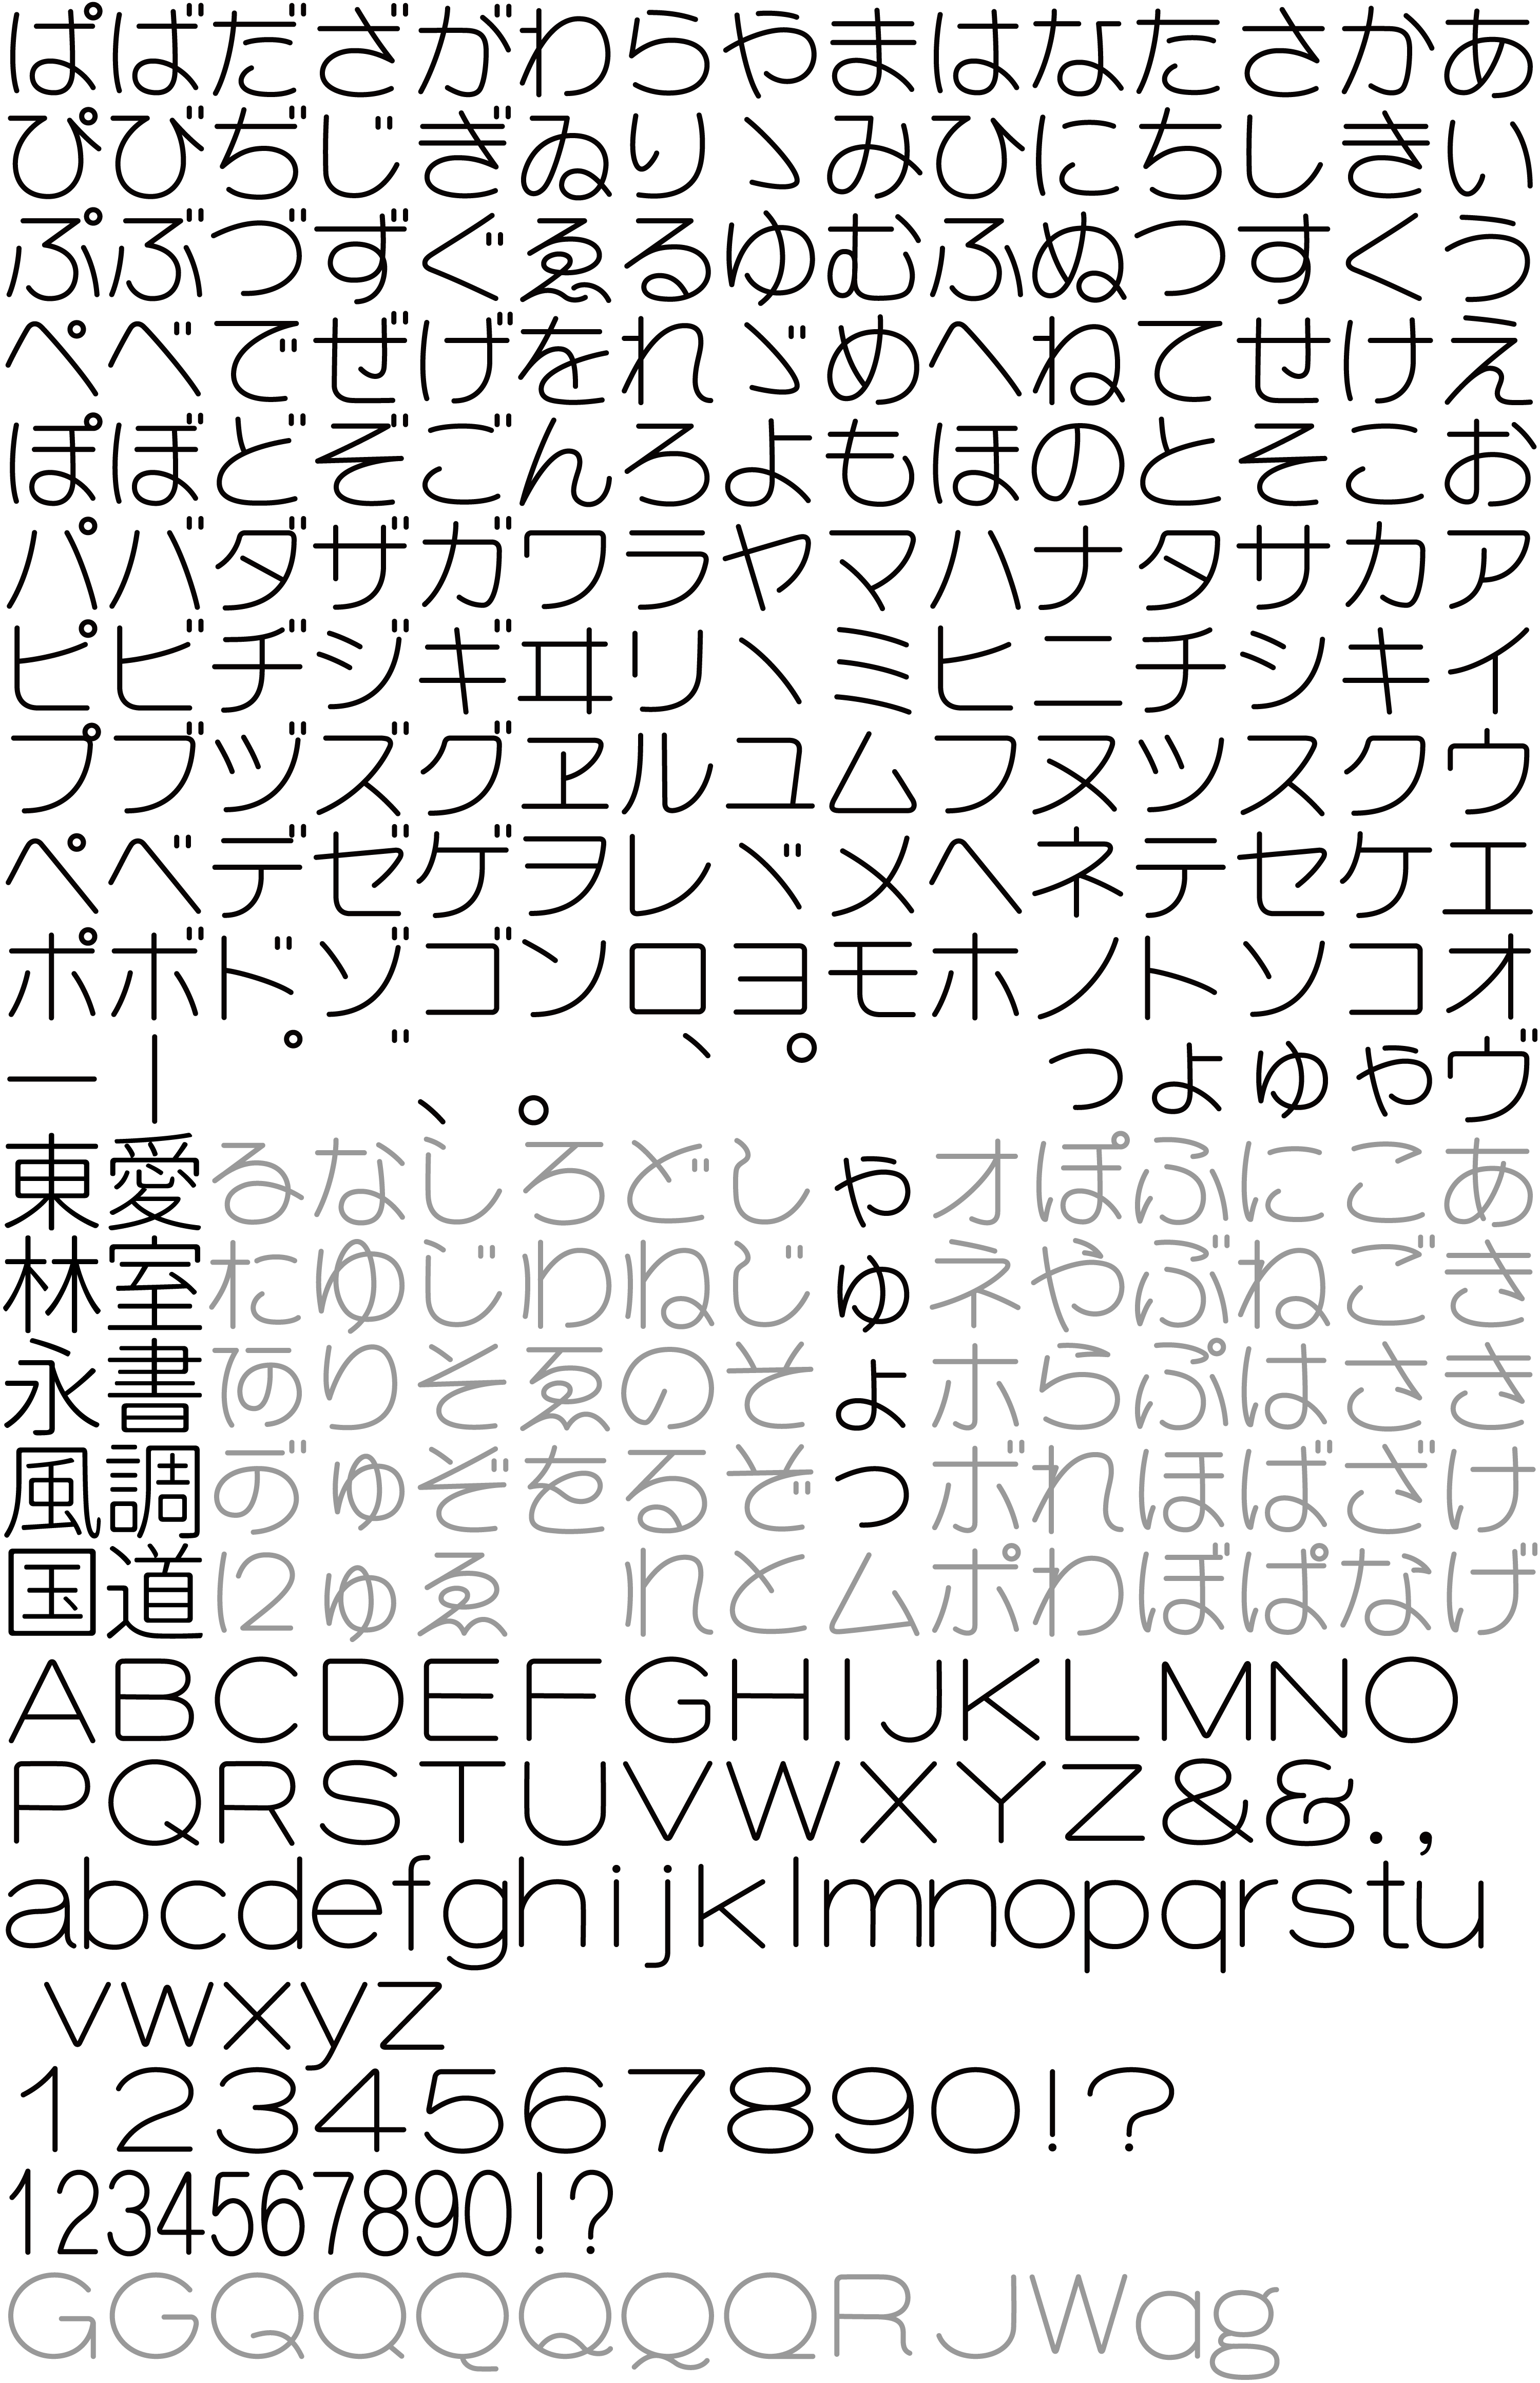 モダン丸ゴシック体 スーパー丸ゴ Super Marugo Fontdasu Com